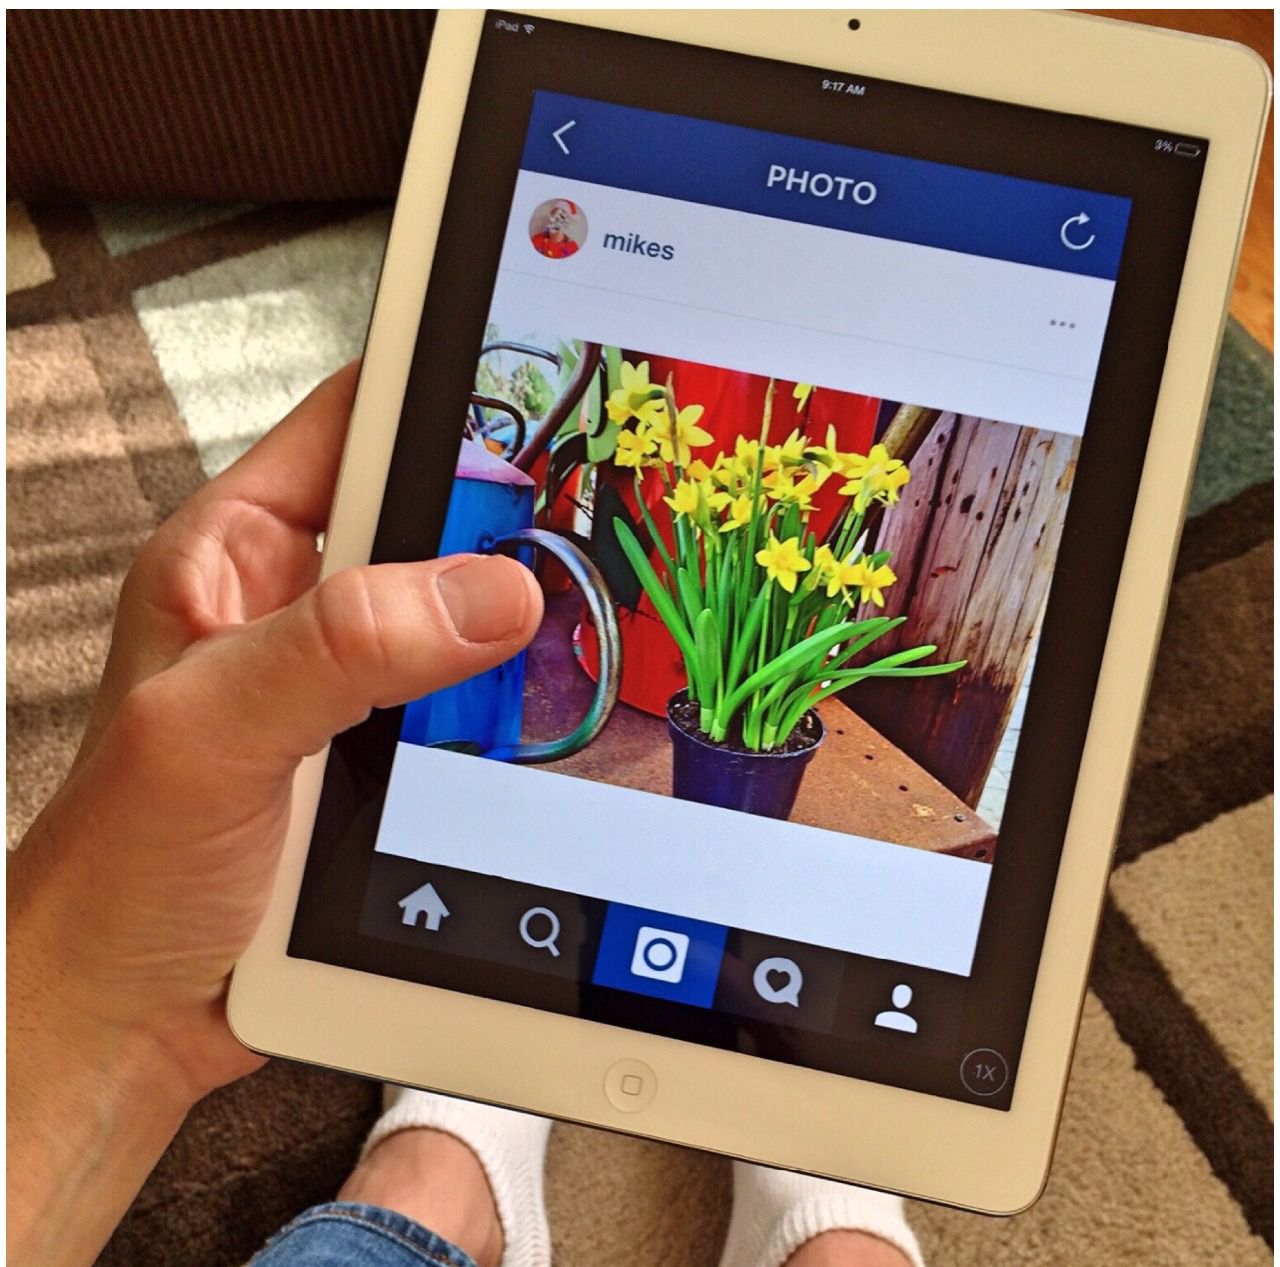 Lo nuevo de Instagram permite crear 'Stories' y guardar desde la web